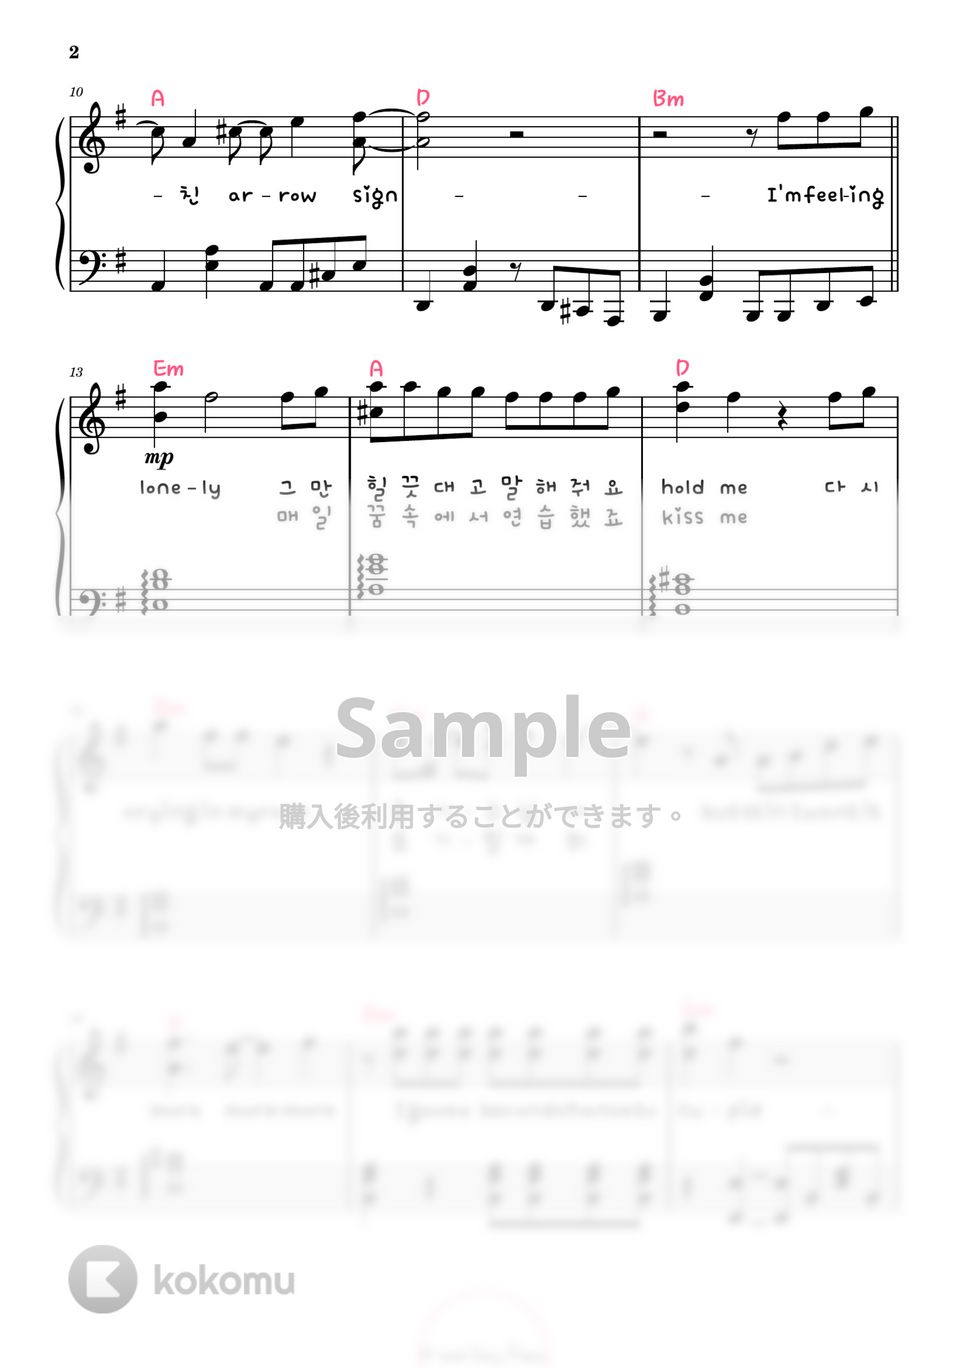 FIFTY FIFTY - Cupid (ピアノ両手 / 中級 / 韓国語歌詞付き) by A-sam